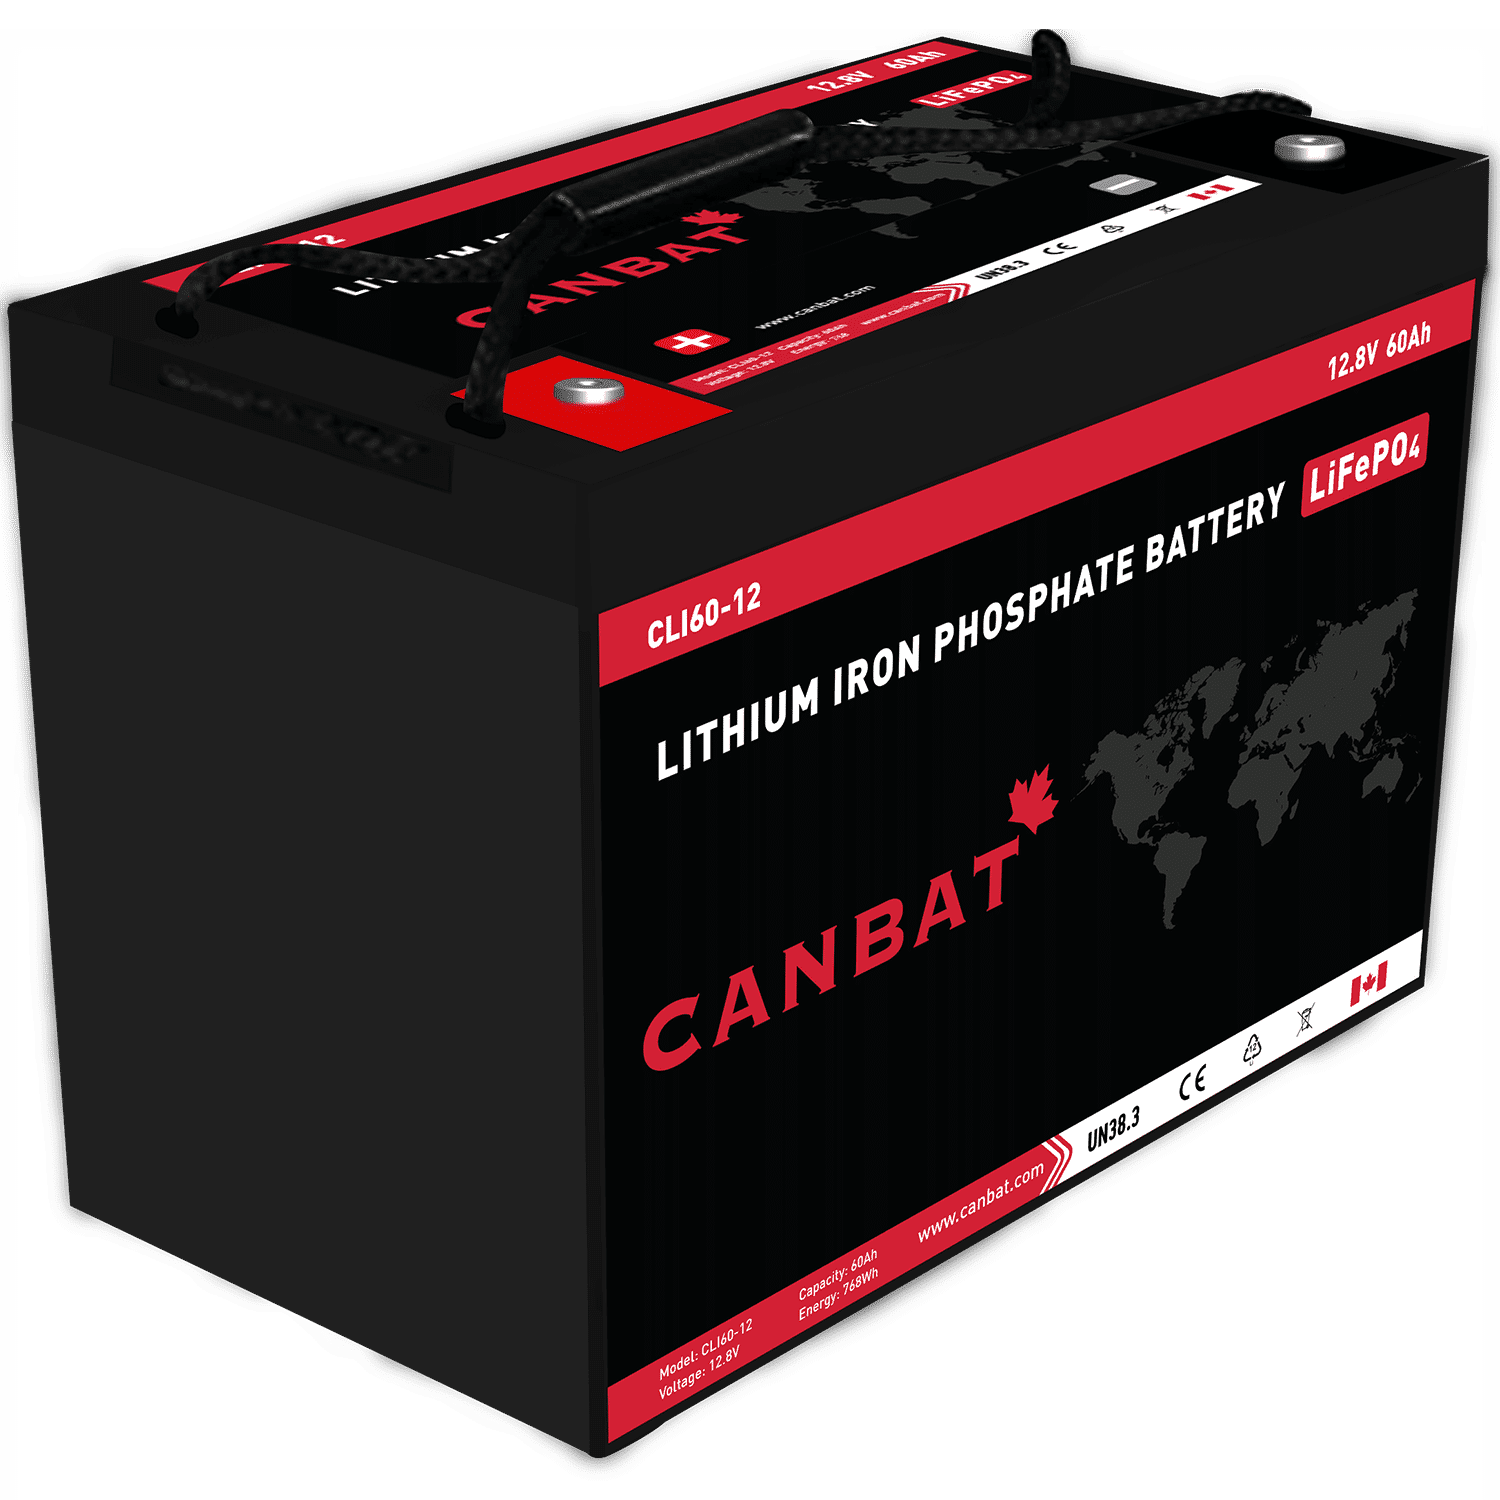 Batterie lithium fer phosphate LIFEPO4 33ah